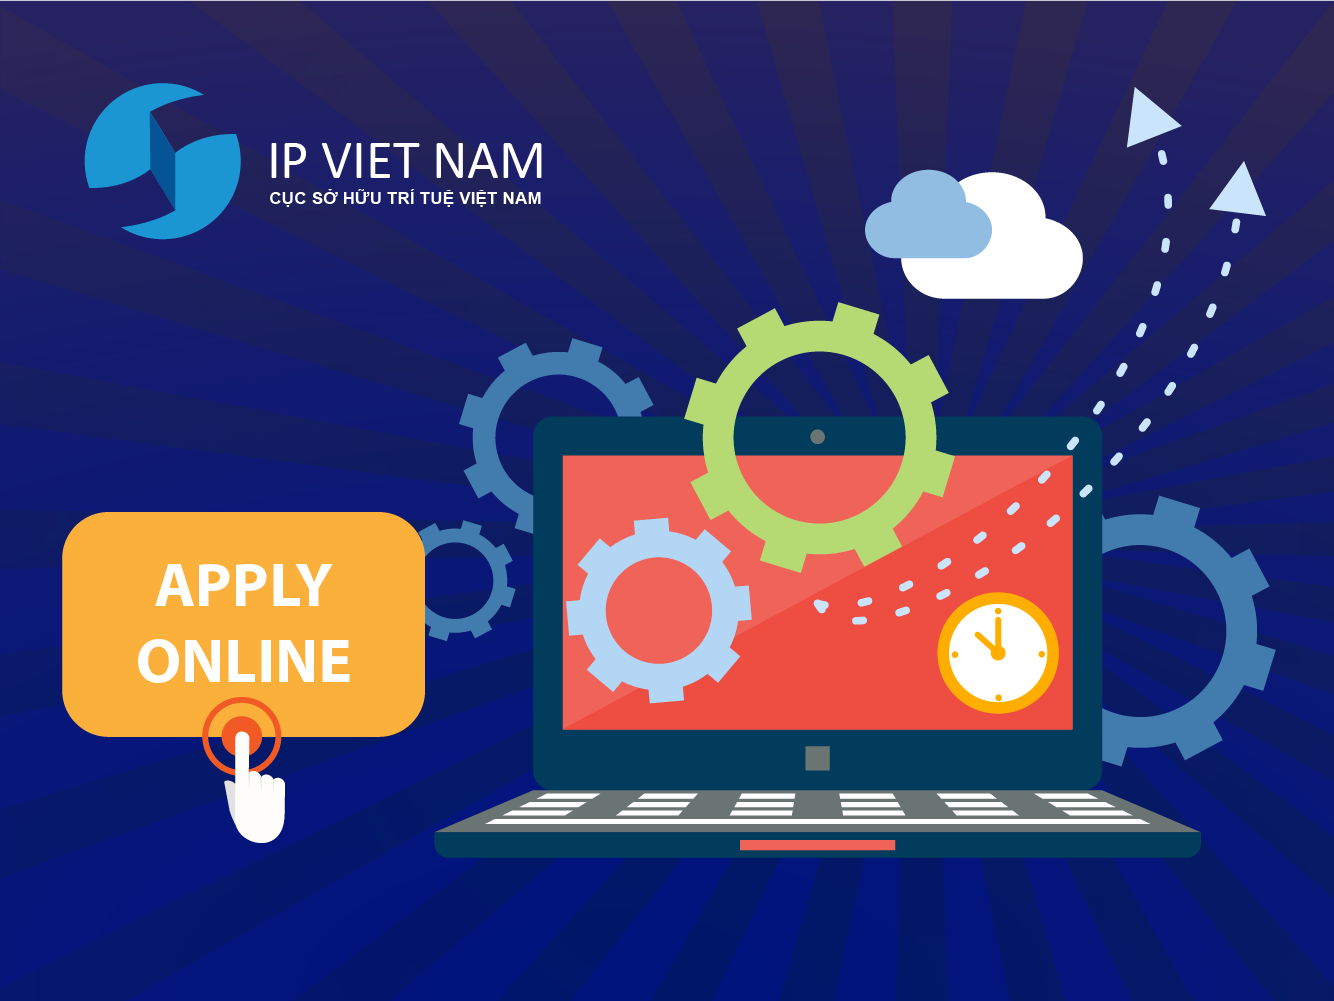 Văn phòng đại diện Cục Sở hữu trí tuệ Việt Nam (IPVN) tại thành phố Hồ Chí Minh dừng nhận đơn trực tiếp do dịch COVID-19